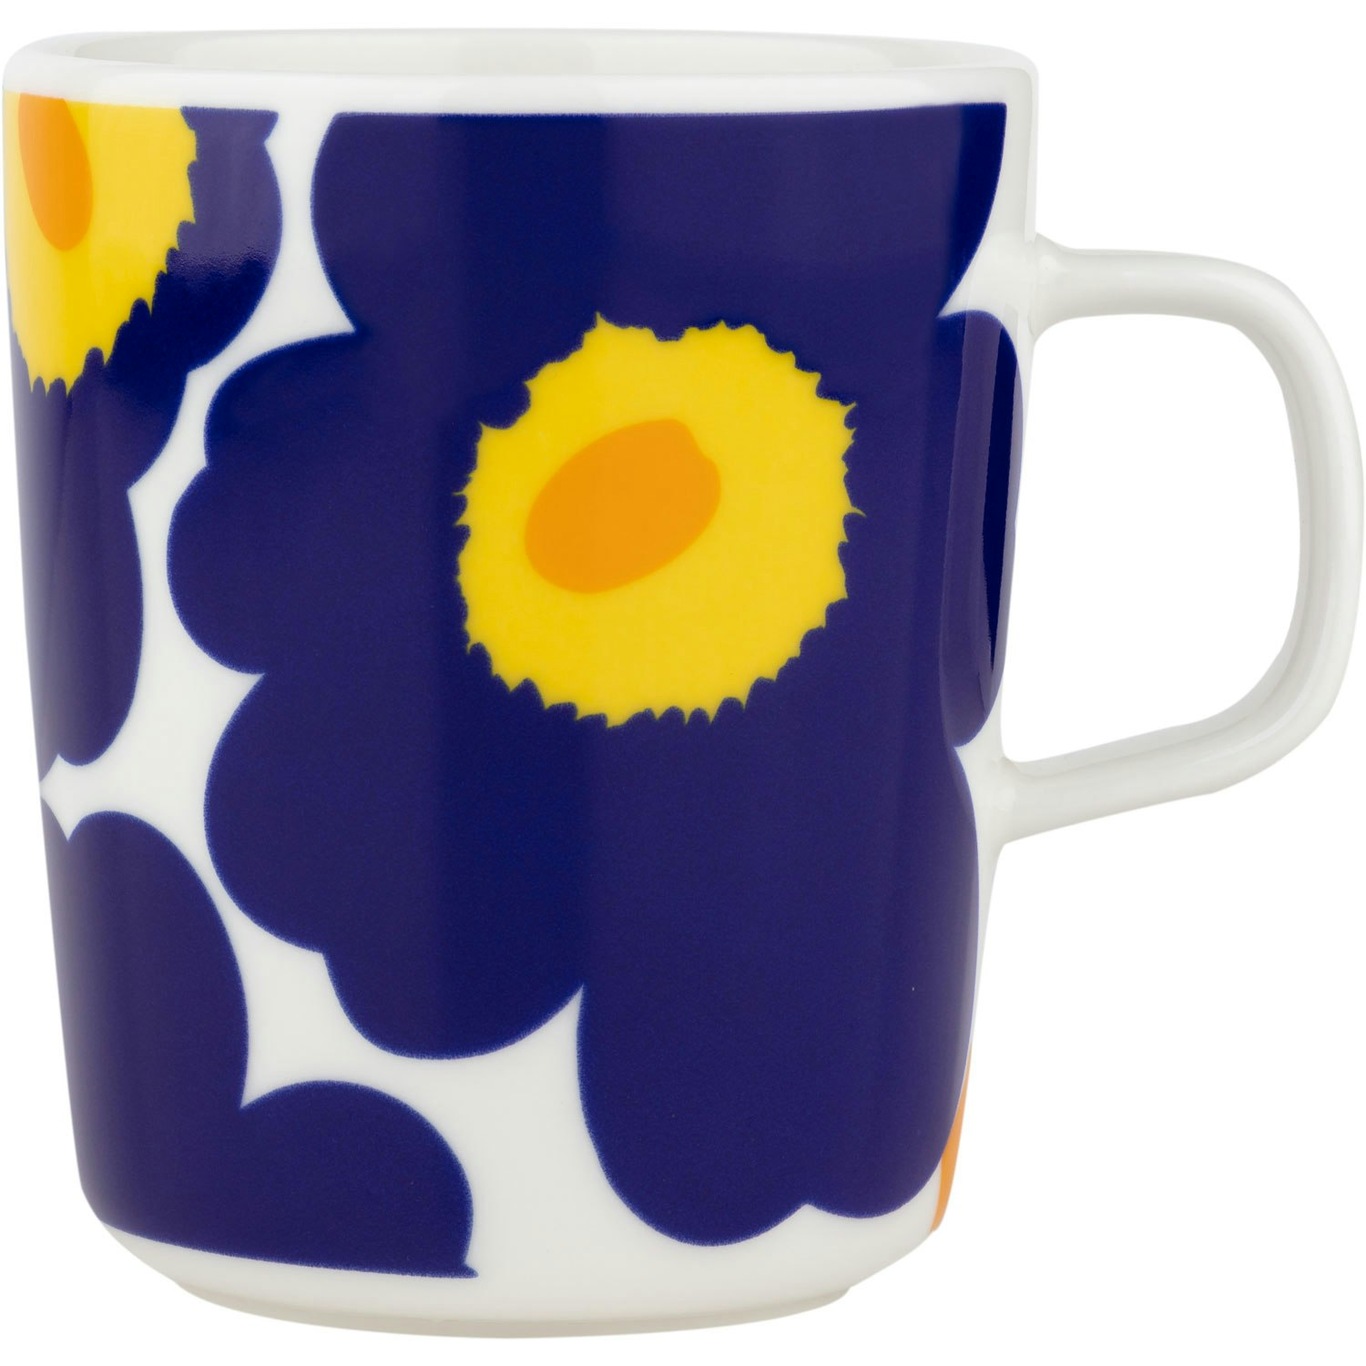 Oiva/Unikko 60Th Anniversary Mug, White / Dark Blue / Yellow